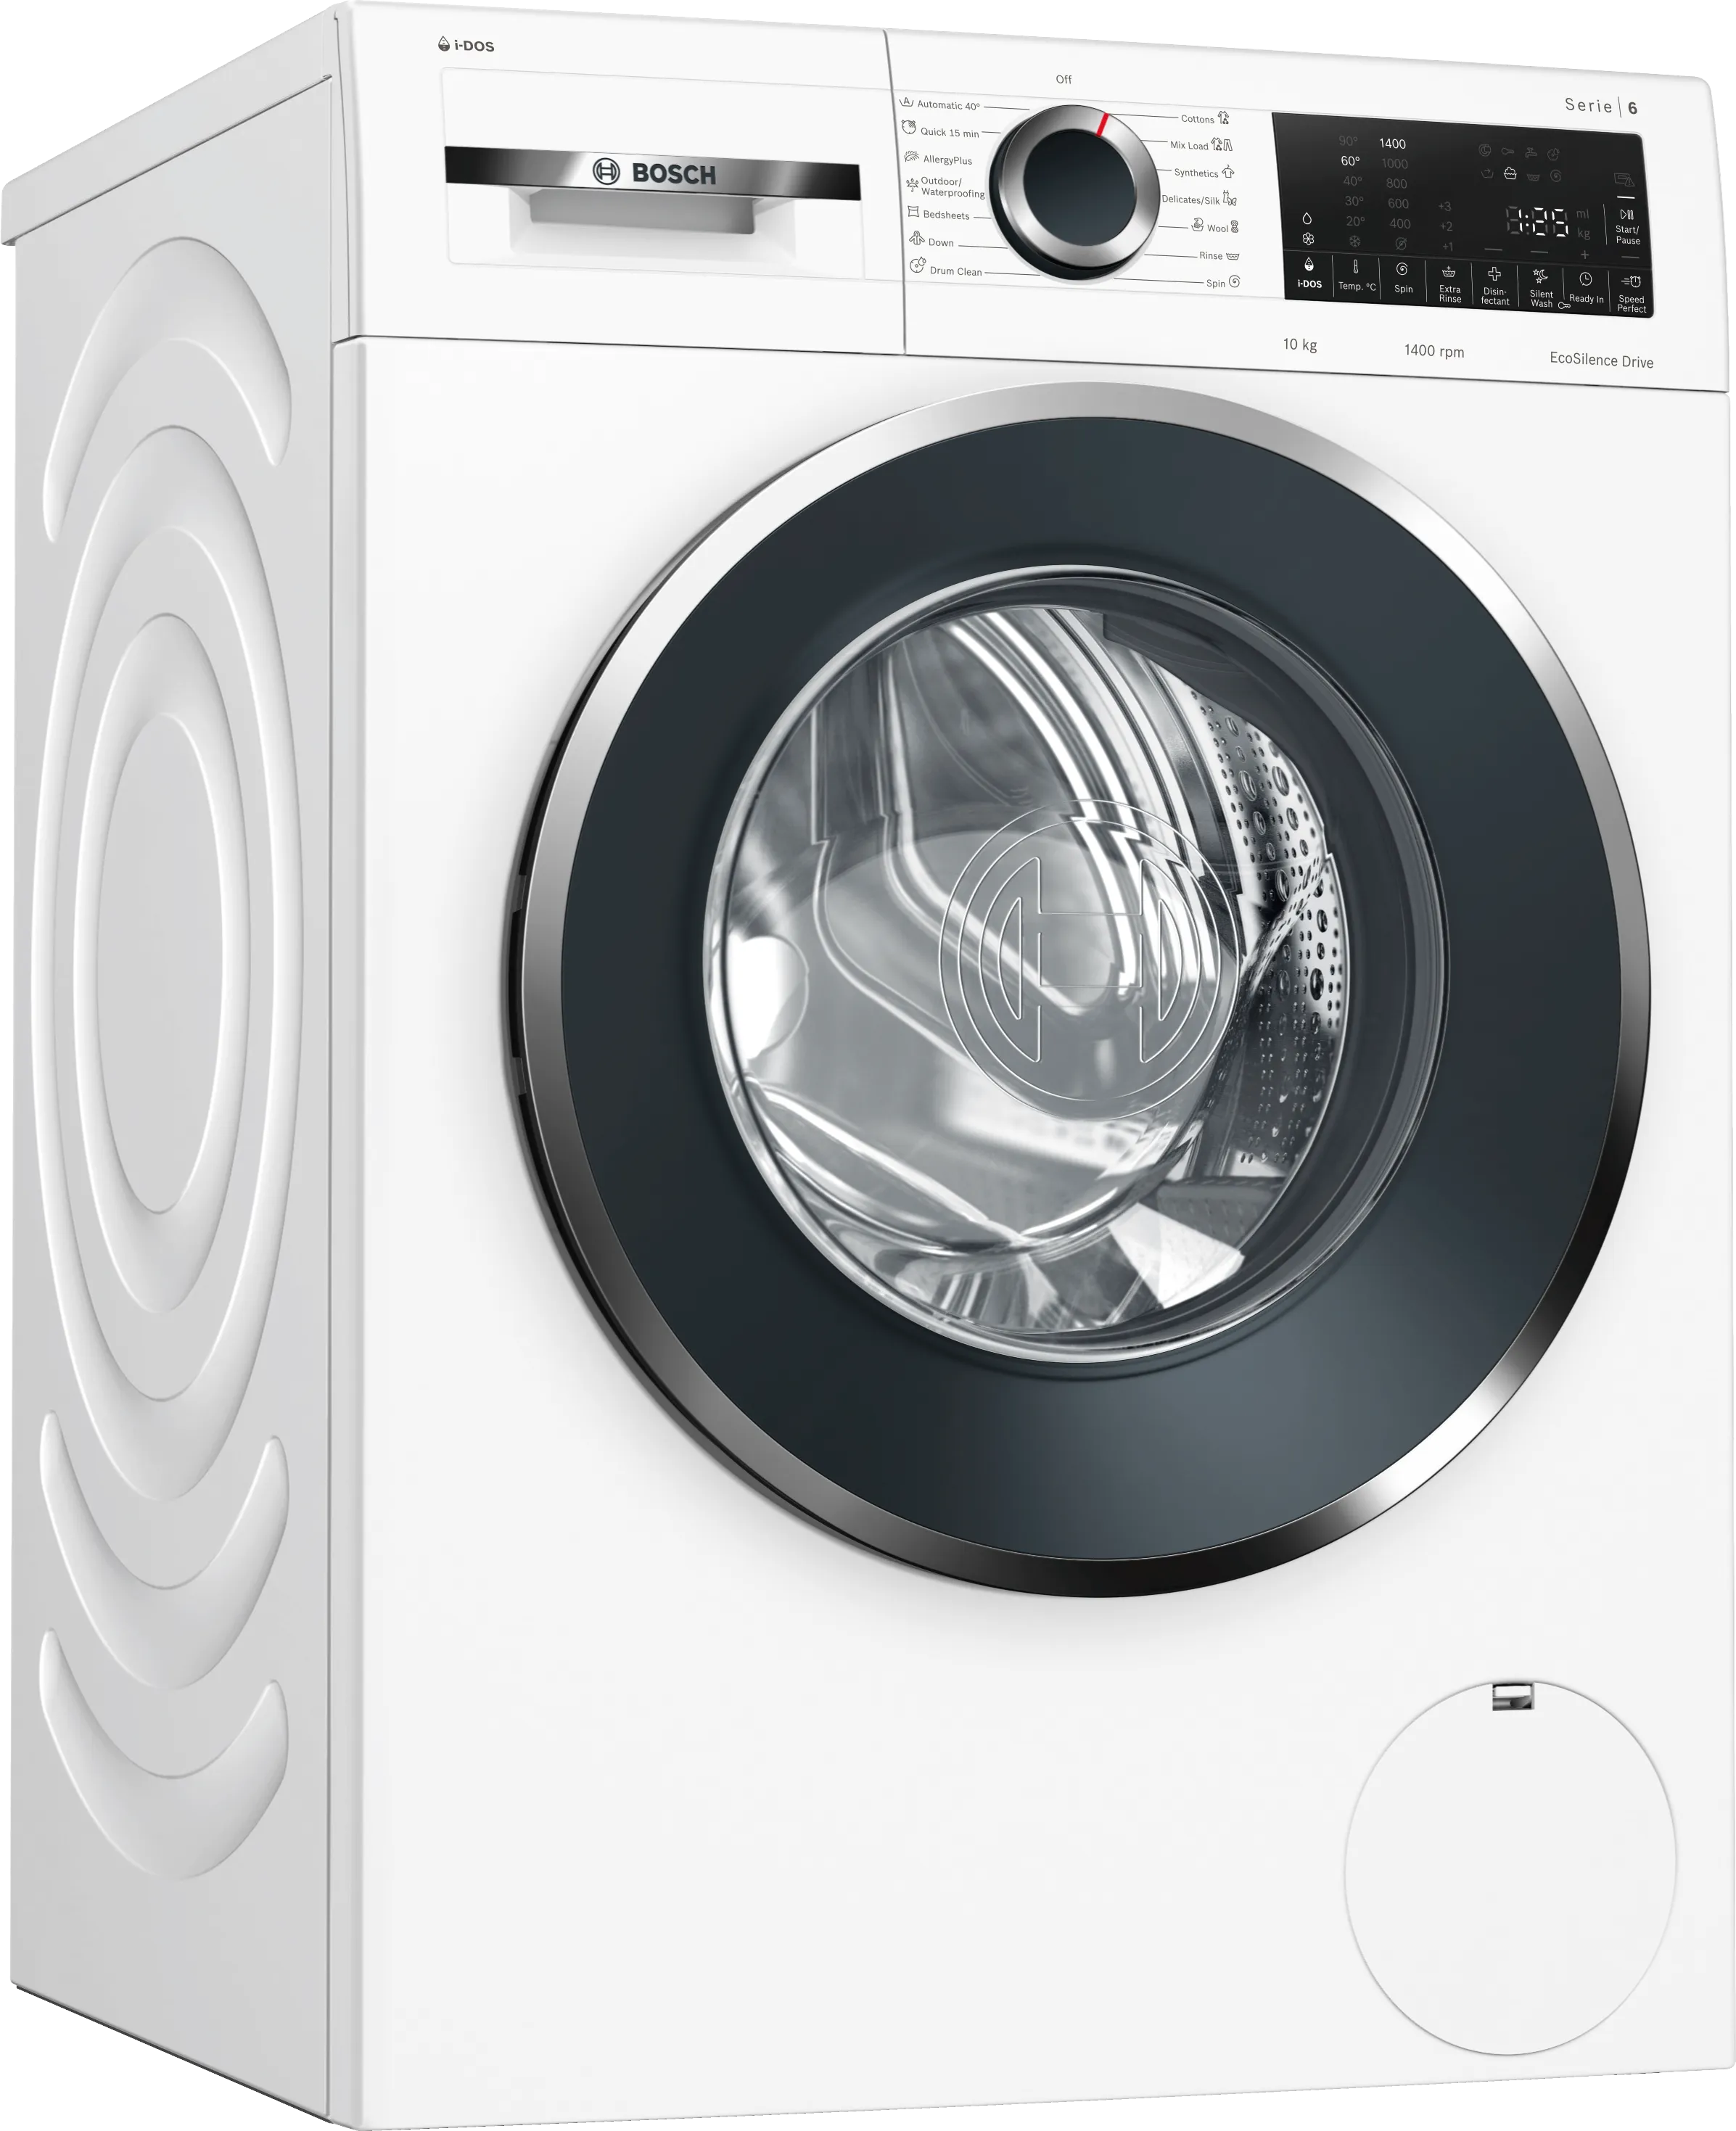 Series 6 Washing machine, front loader 10 kg 1400 rpm 